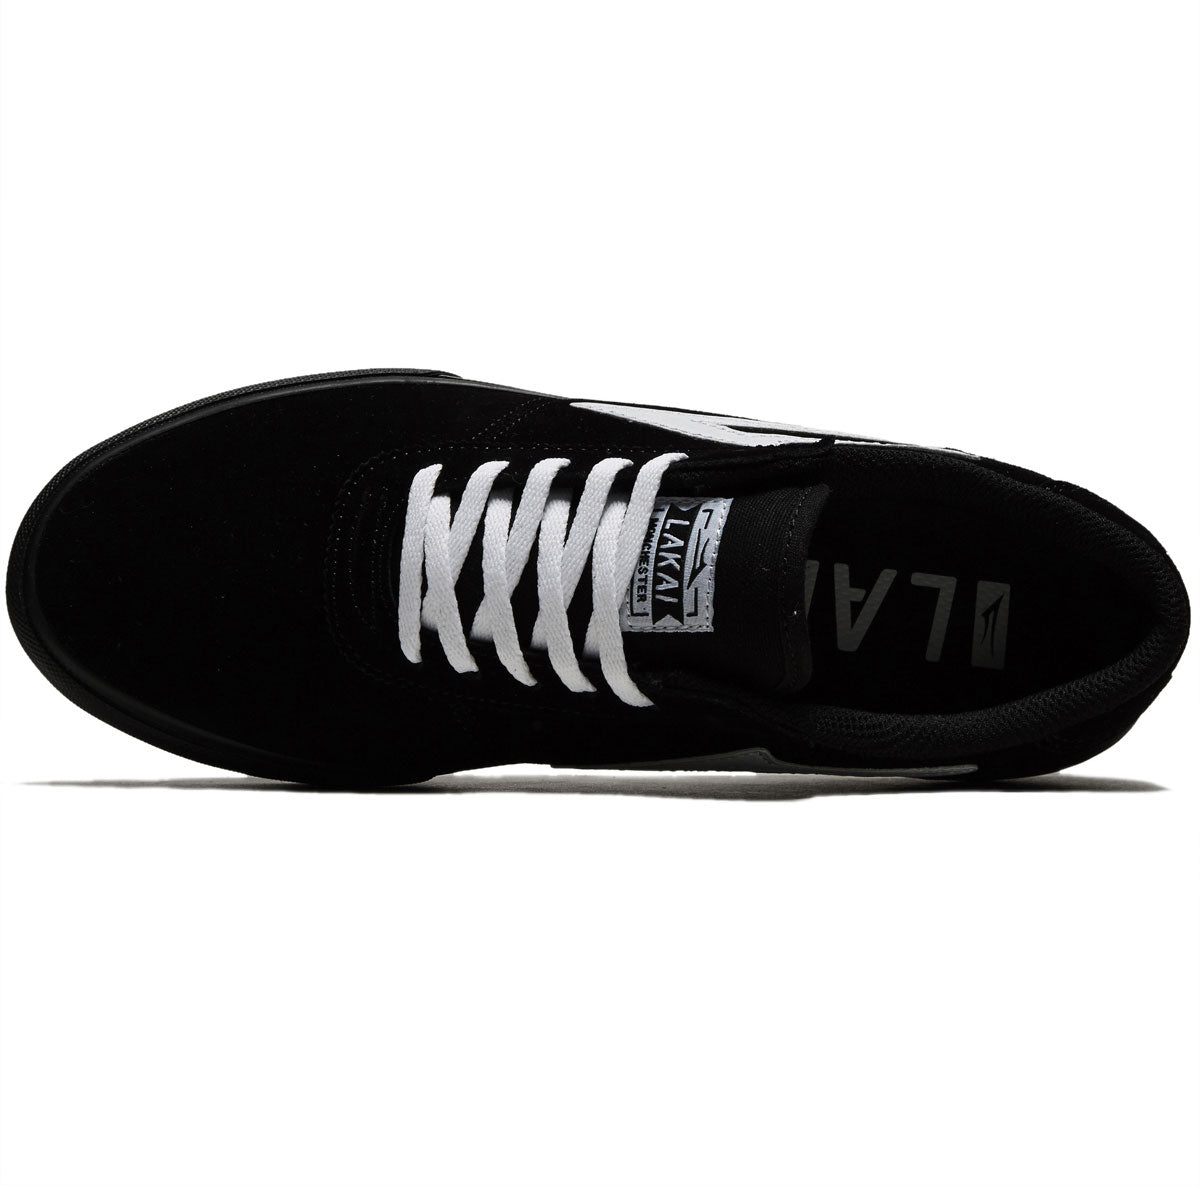 Lakai Manchester Shoes - Black/White image 3